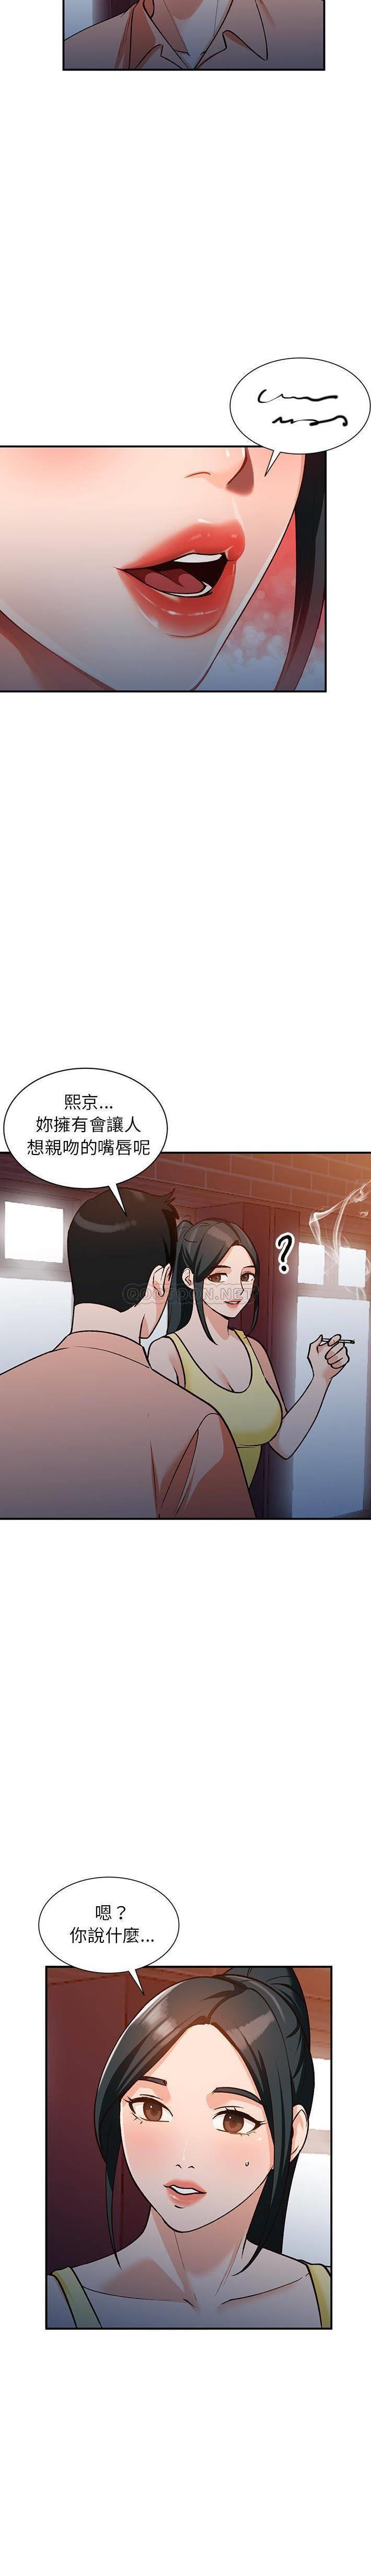 韩国污漫画 她們的小秘密(小鎮上的女人們) 第29话 16